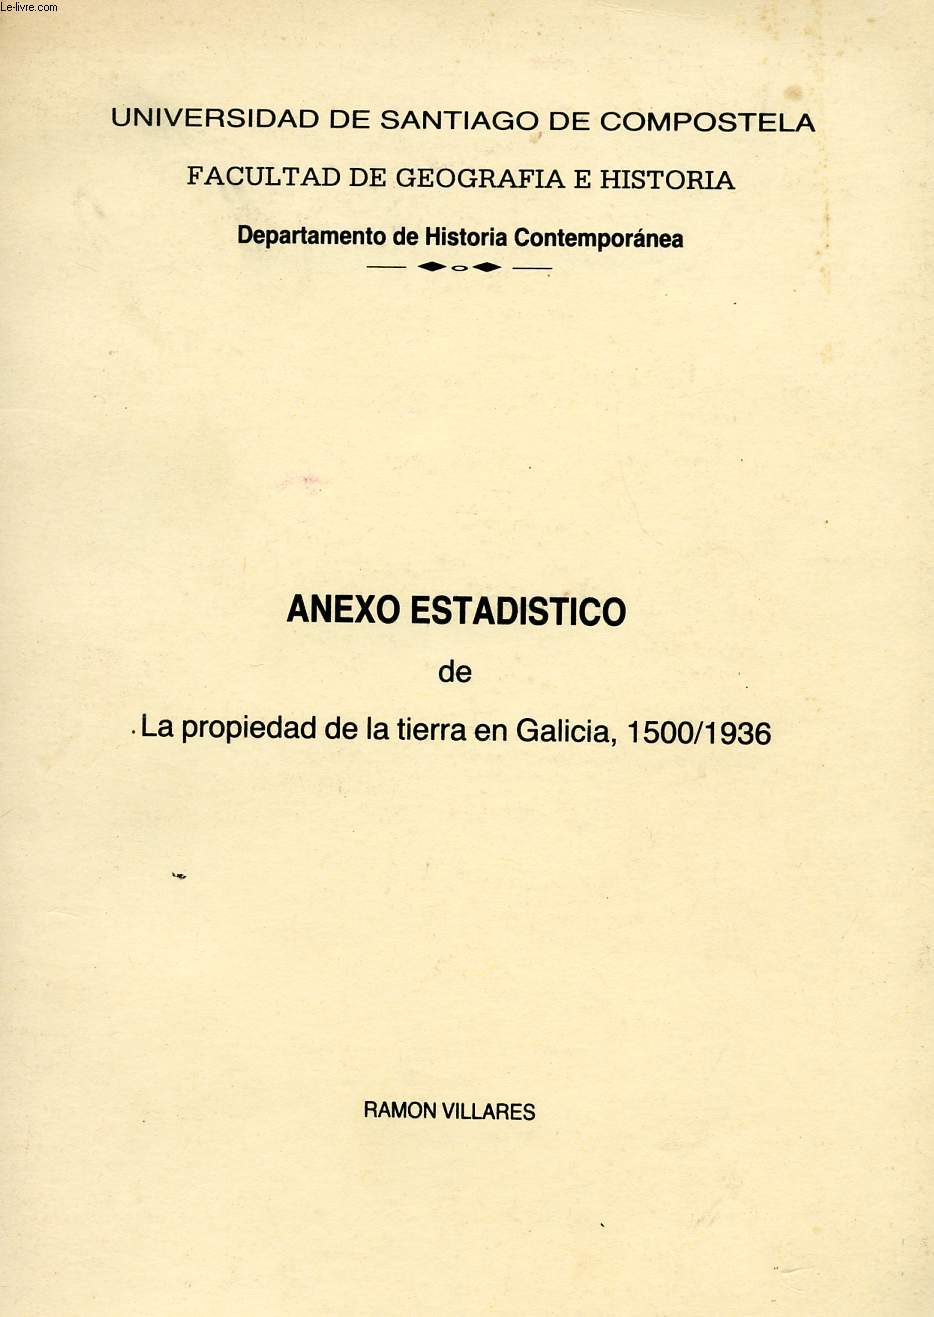 ANEXO ESTADISTICO DE LA PROPRIEDAD DE LA TIERRA EN GALICIA, 1500-1936